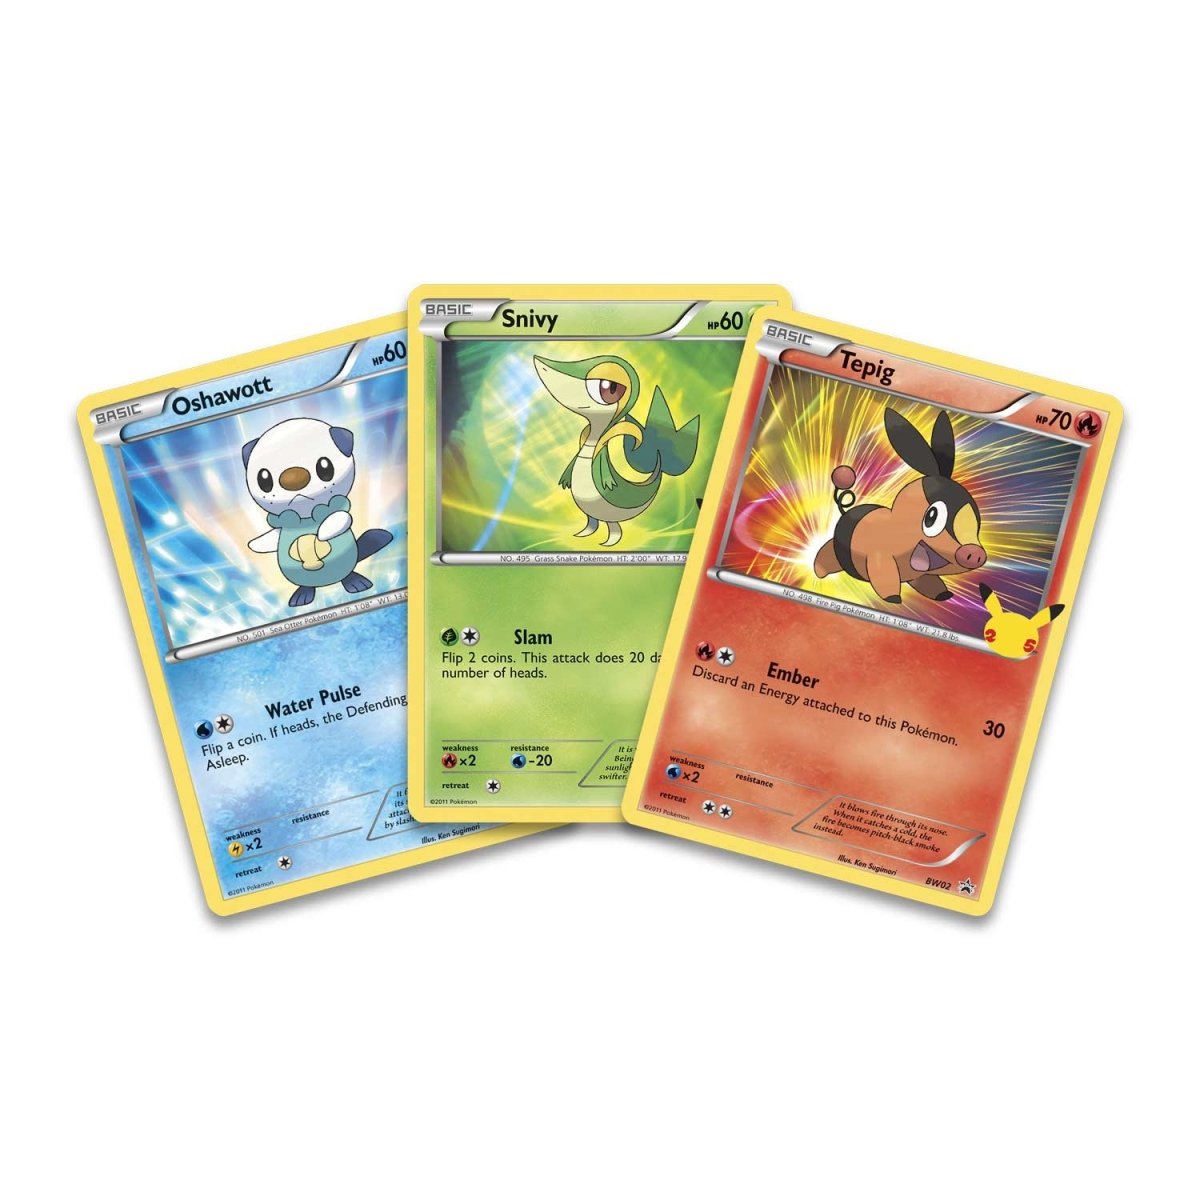 Pokémon First Partner Pack [Unova] – Fable Hobby